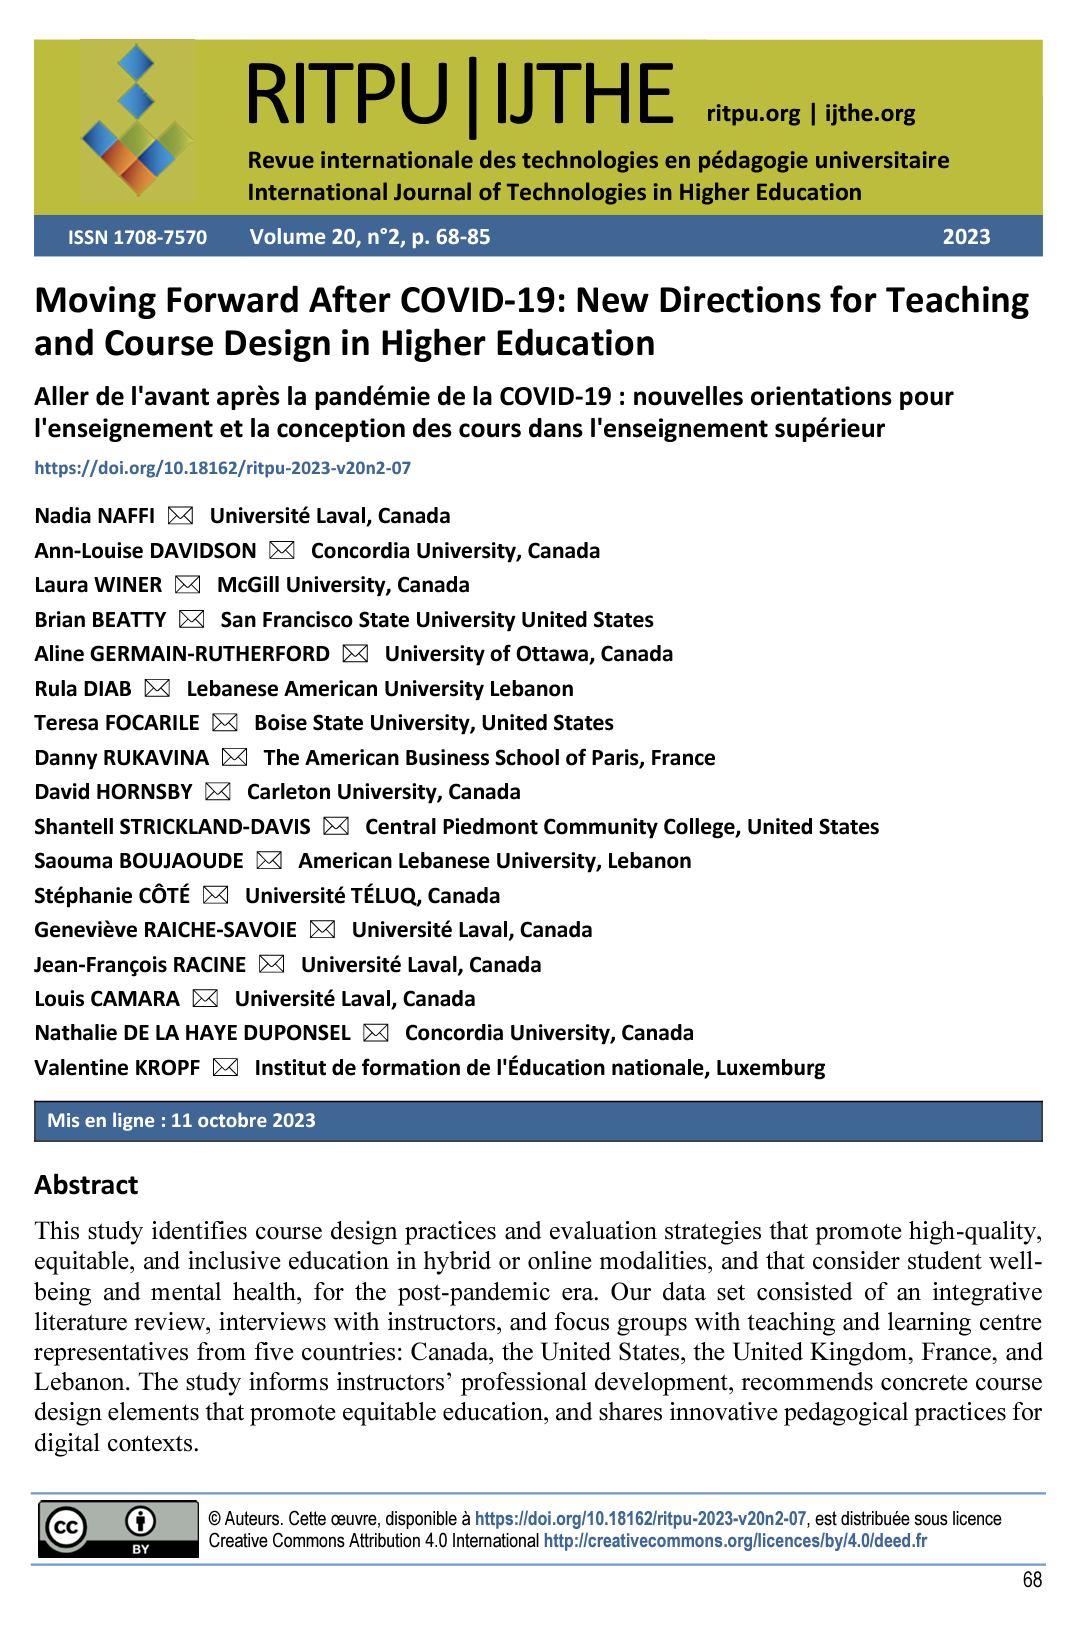 Moving Forward After COVID-19: New Directions for Teaching and Course Design in Higher Education Aller de l'avant après la pandémie de la COVID-19 : nouvelles orientations pour l'enseignement et la conception des cours dans l'enseignement supérieur 